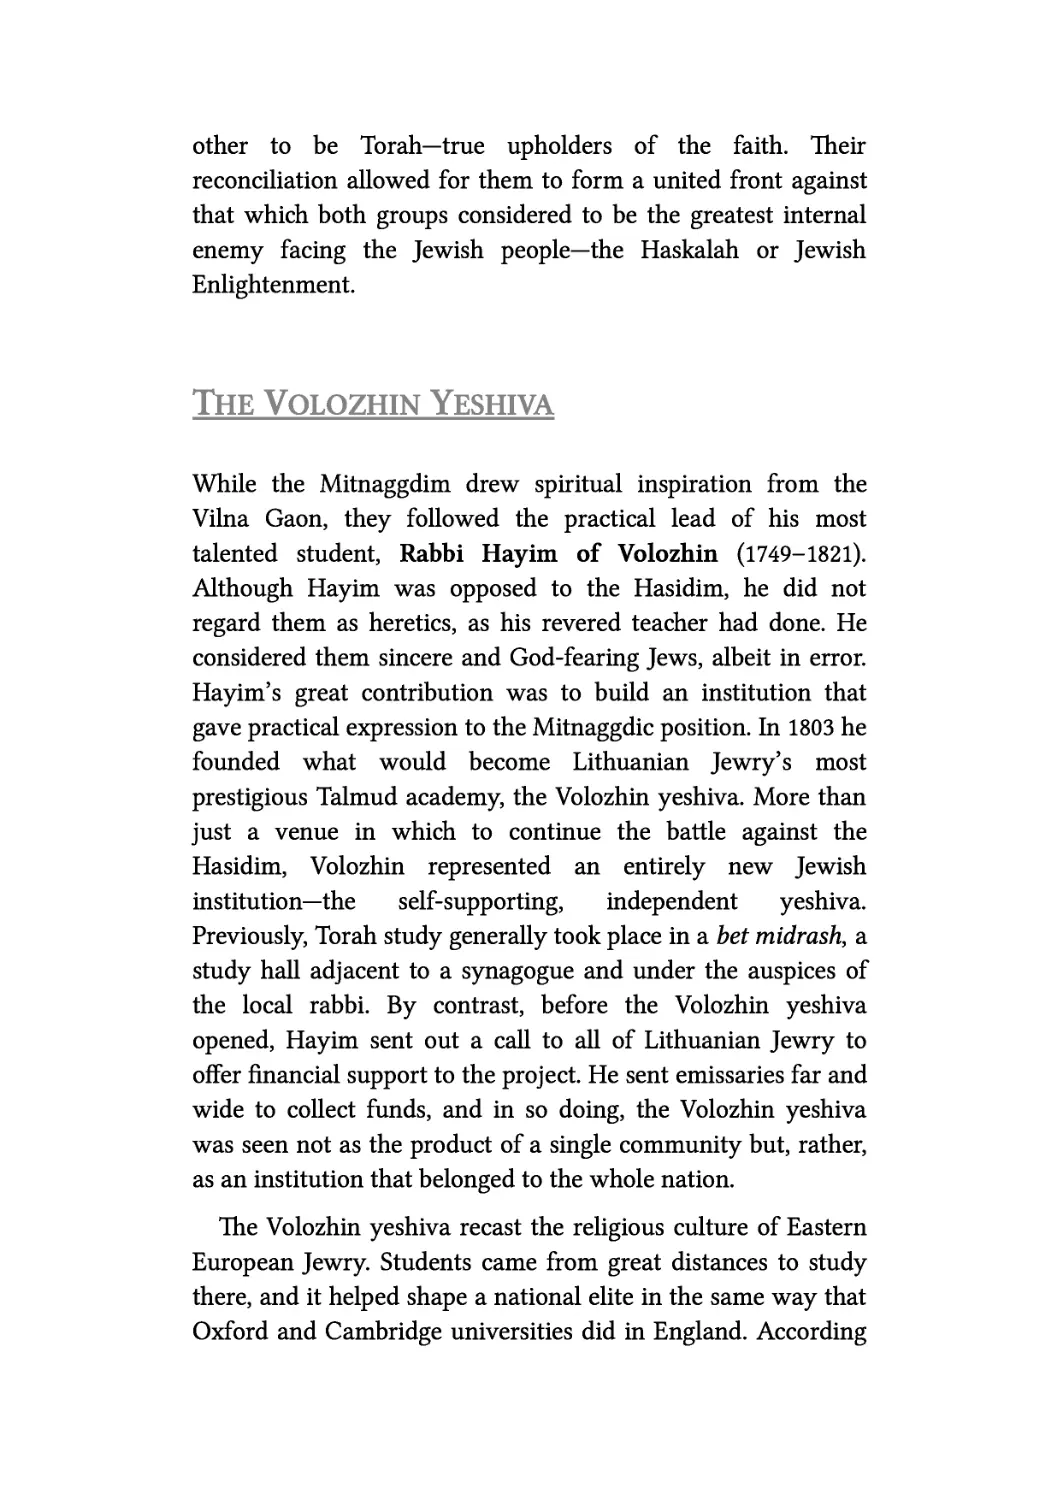 The Volozhin Yeshiva